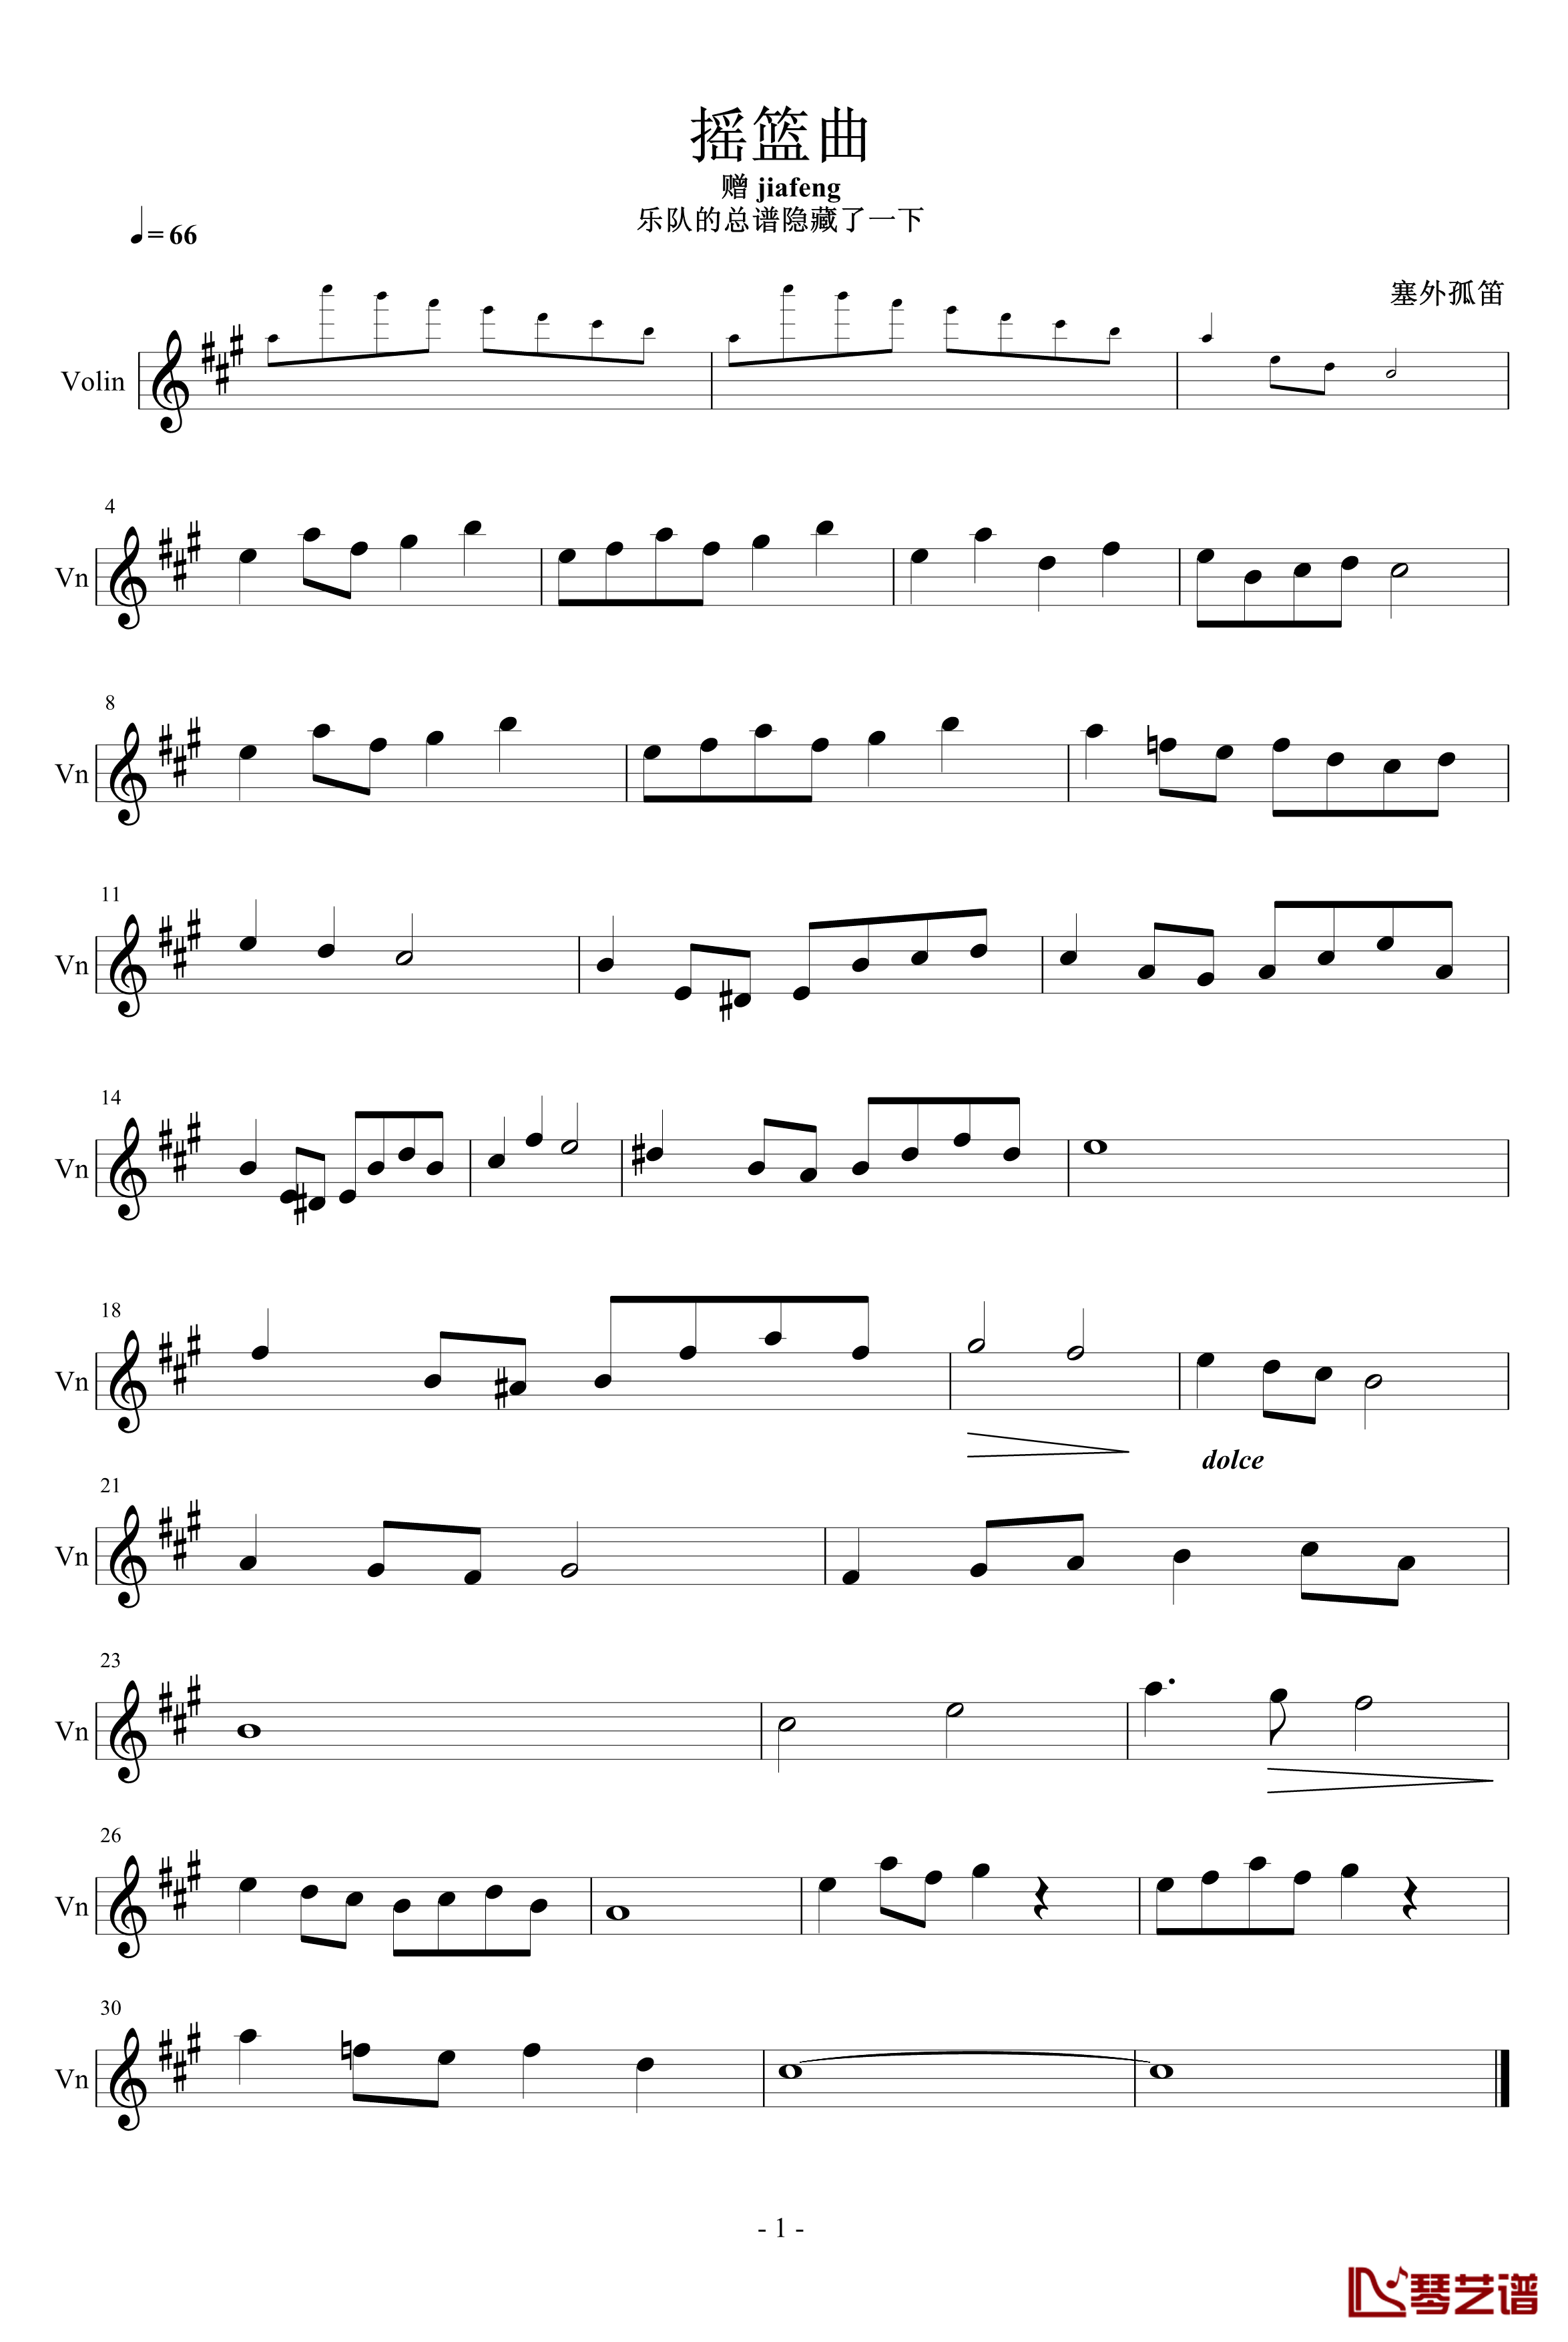 摇篮曲钢琴谱-小提琴-塞外孤笛1